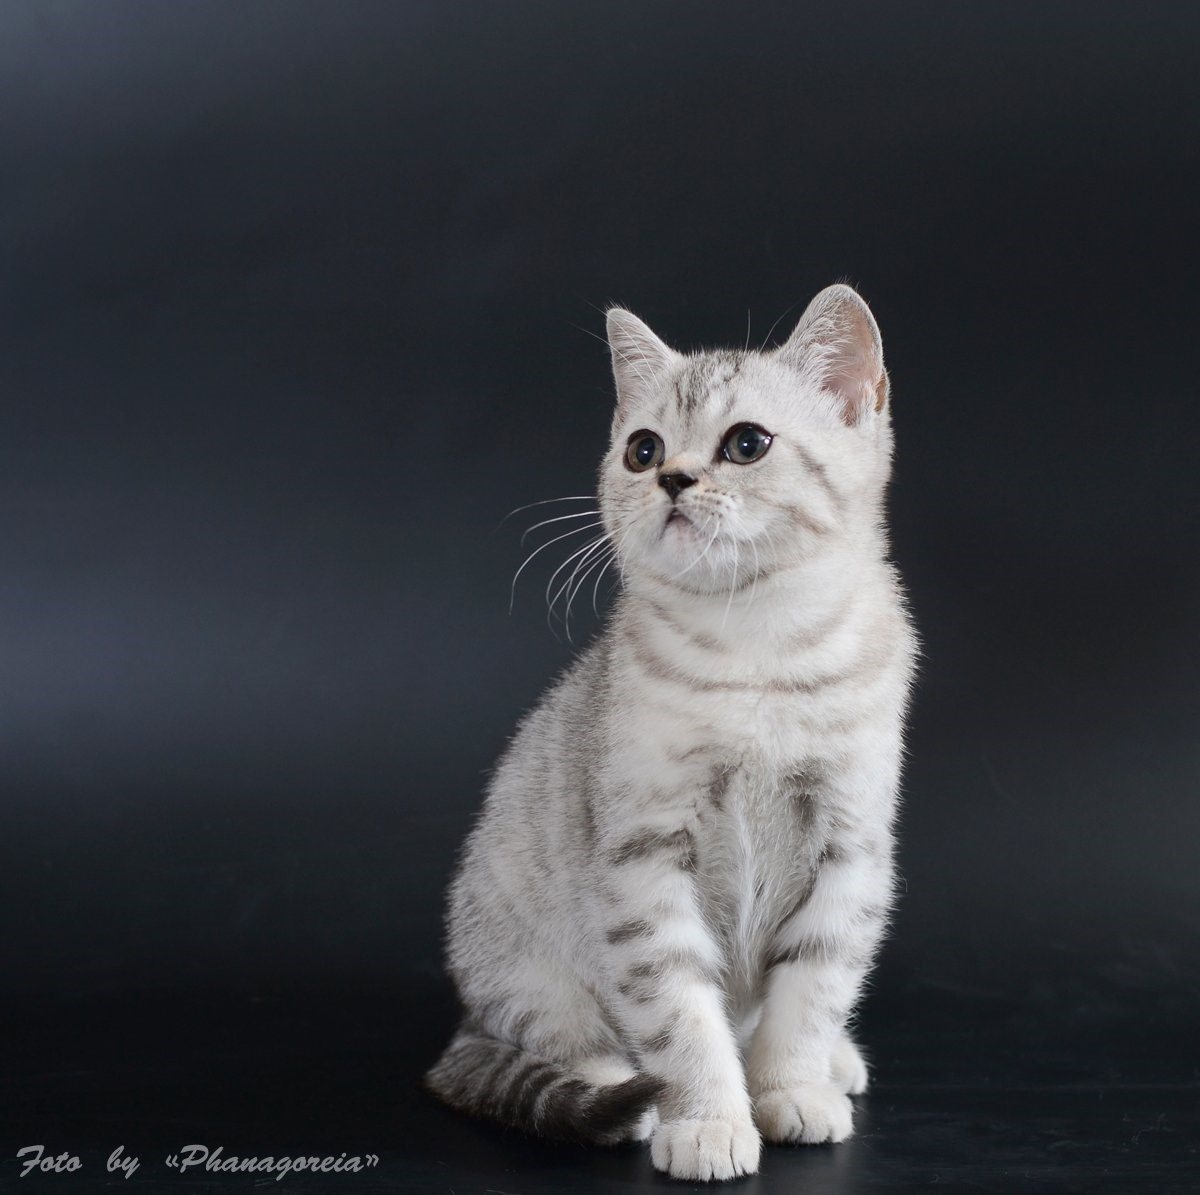 кошки шотландской породы прямоухие фото характер